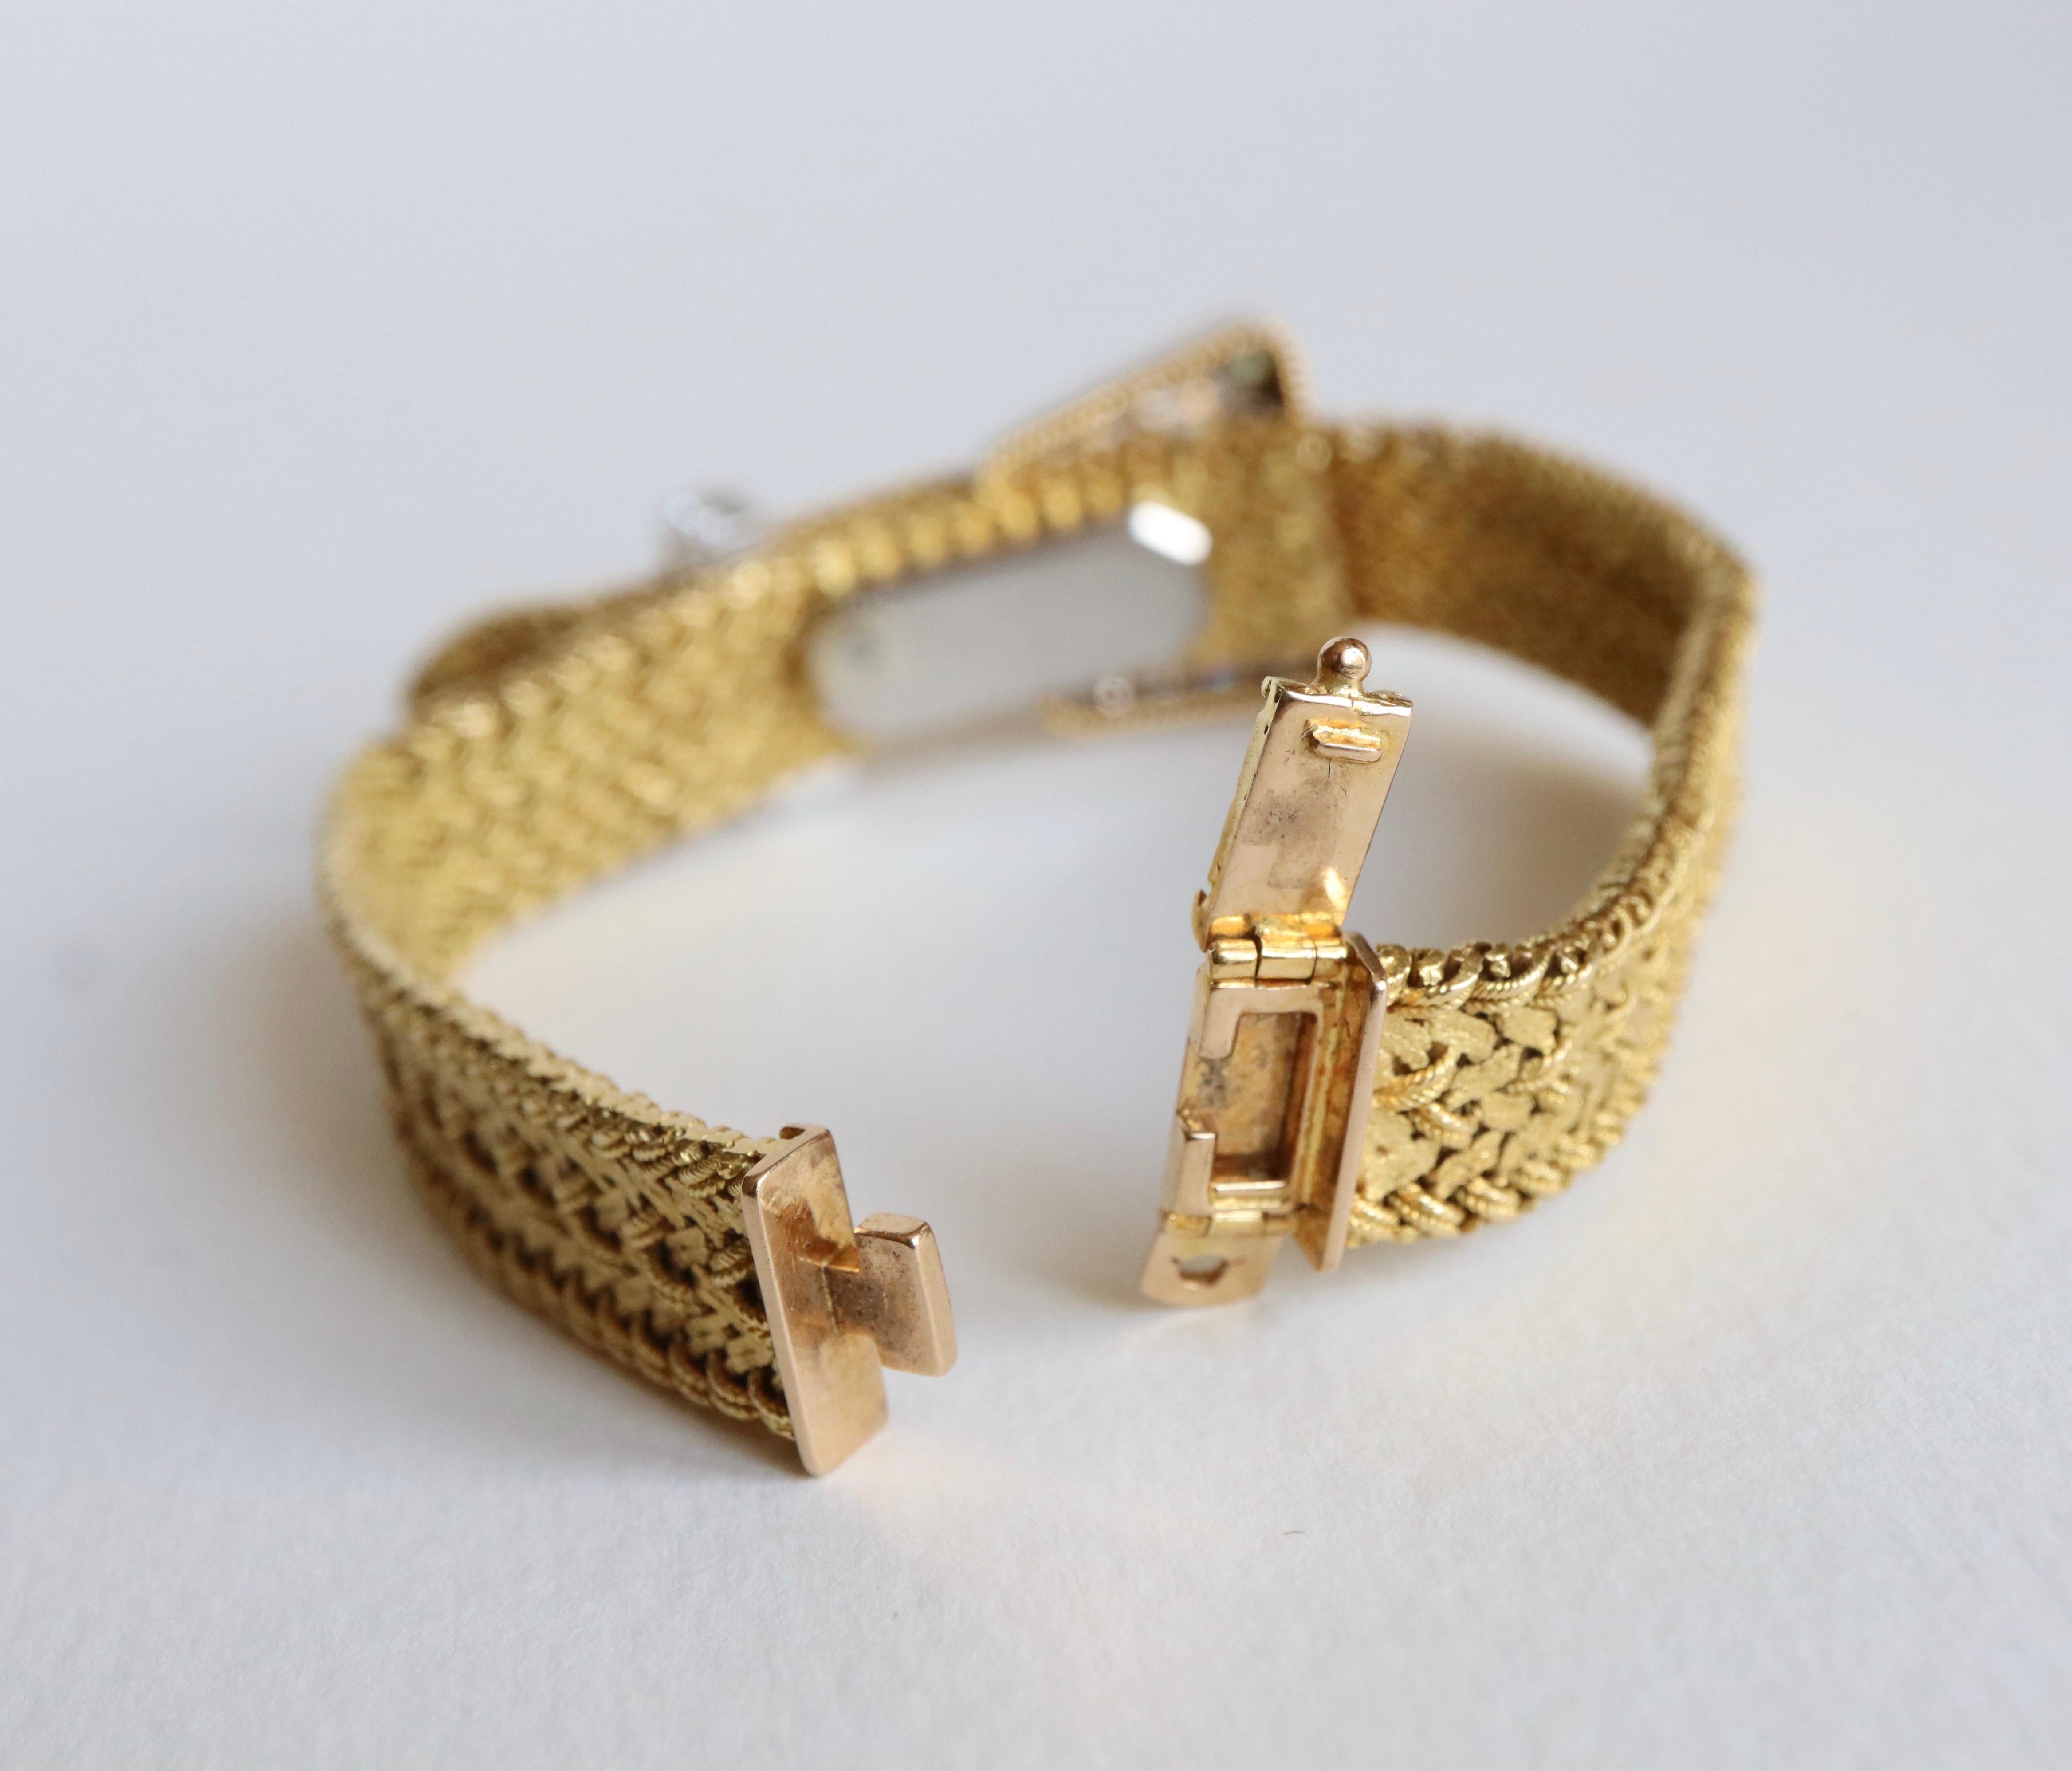 Kutchinsky Women's Secret Bracelet Watch in 18 Karat Gold 3 Carat Diamonds 7